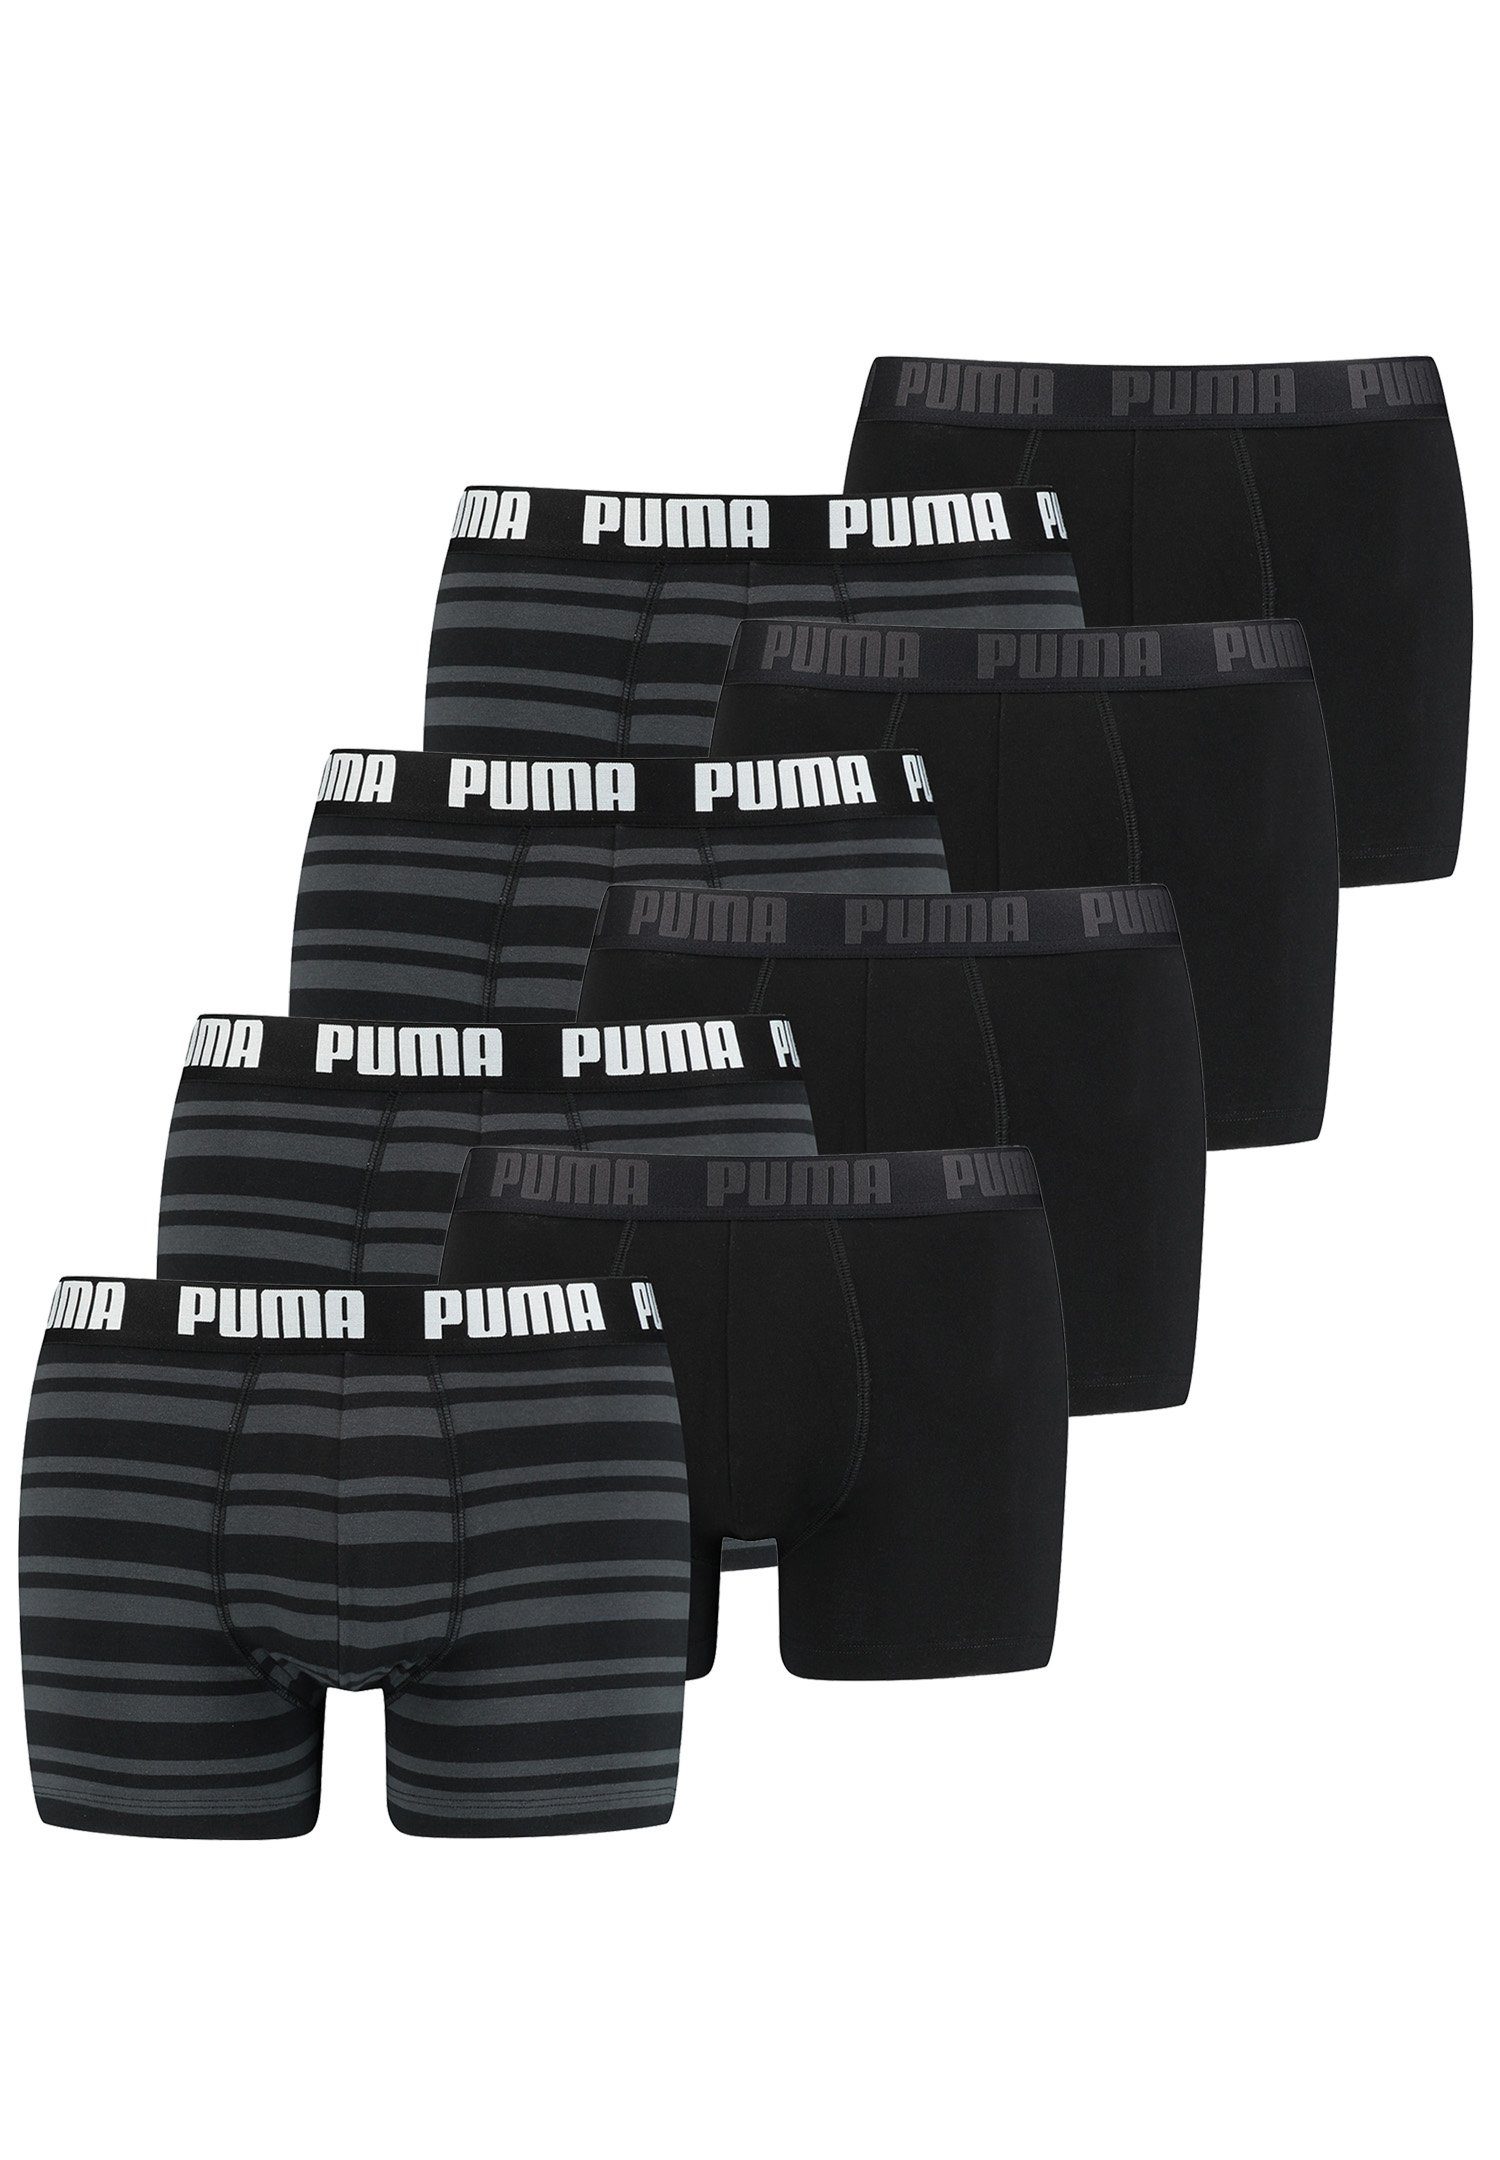 PUMA Boxershorts HERITAGE STRIPE BOXER 8er Pack